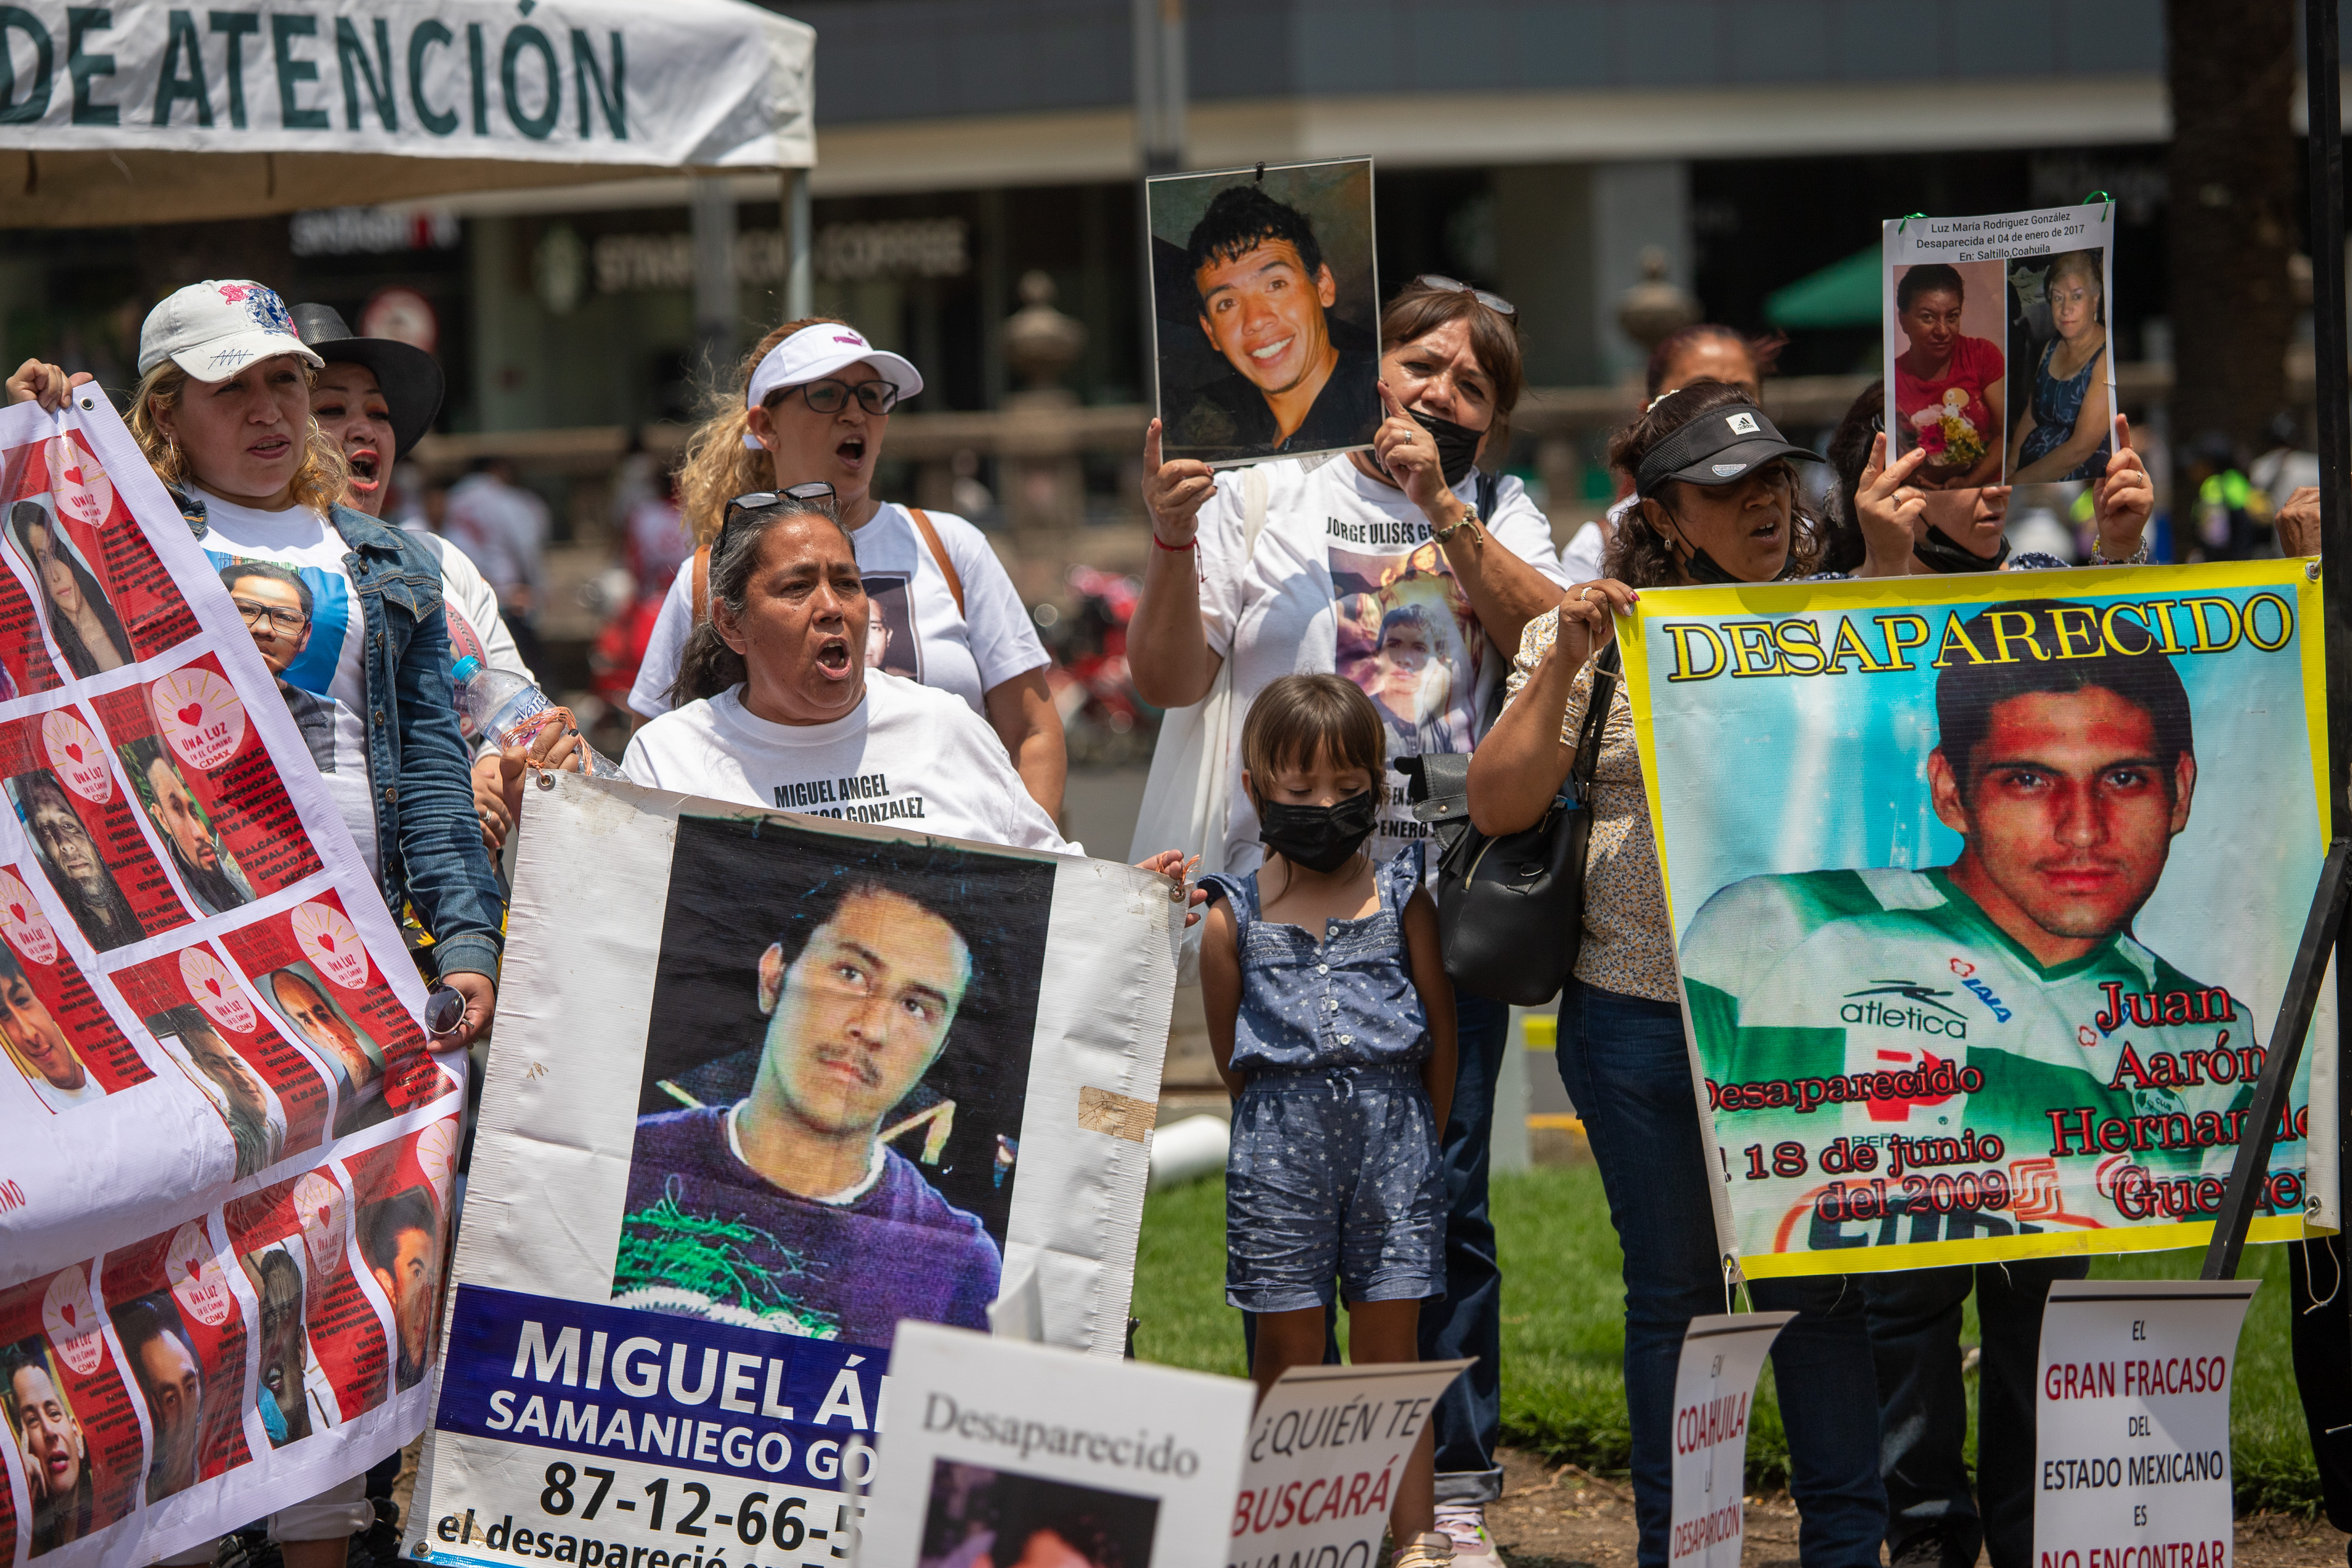  Colectivos de personas desaparecidas participan en una protesta para exigir resultados en la búsqueda de sus familiares en la Ciudad de México (Foto: EFE)
